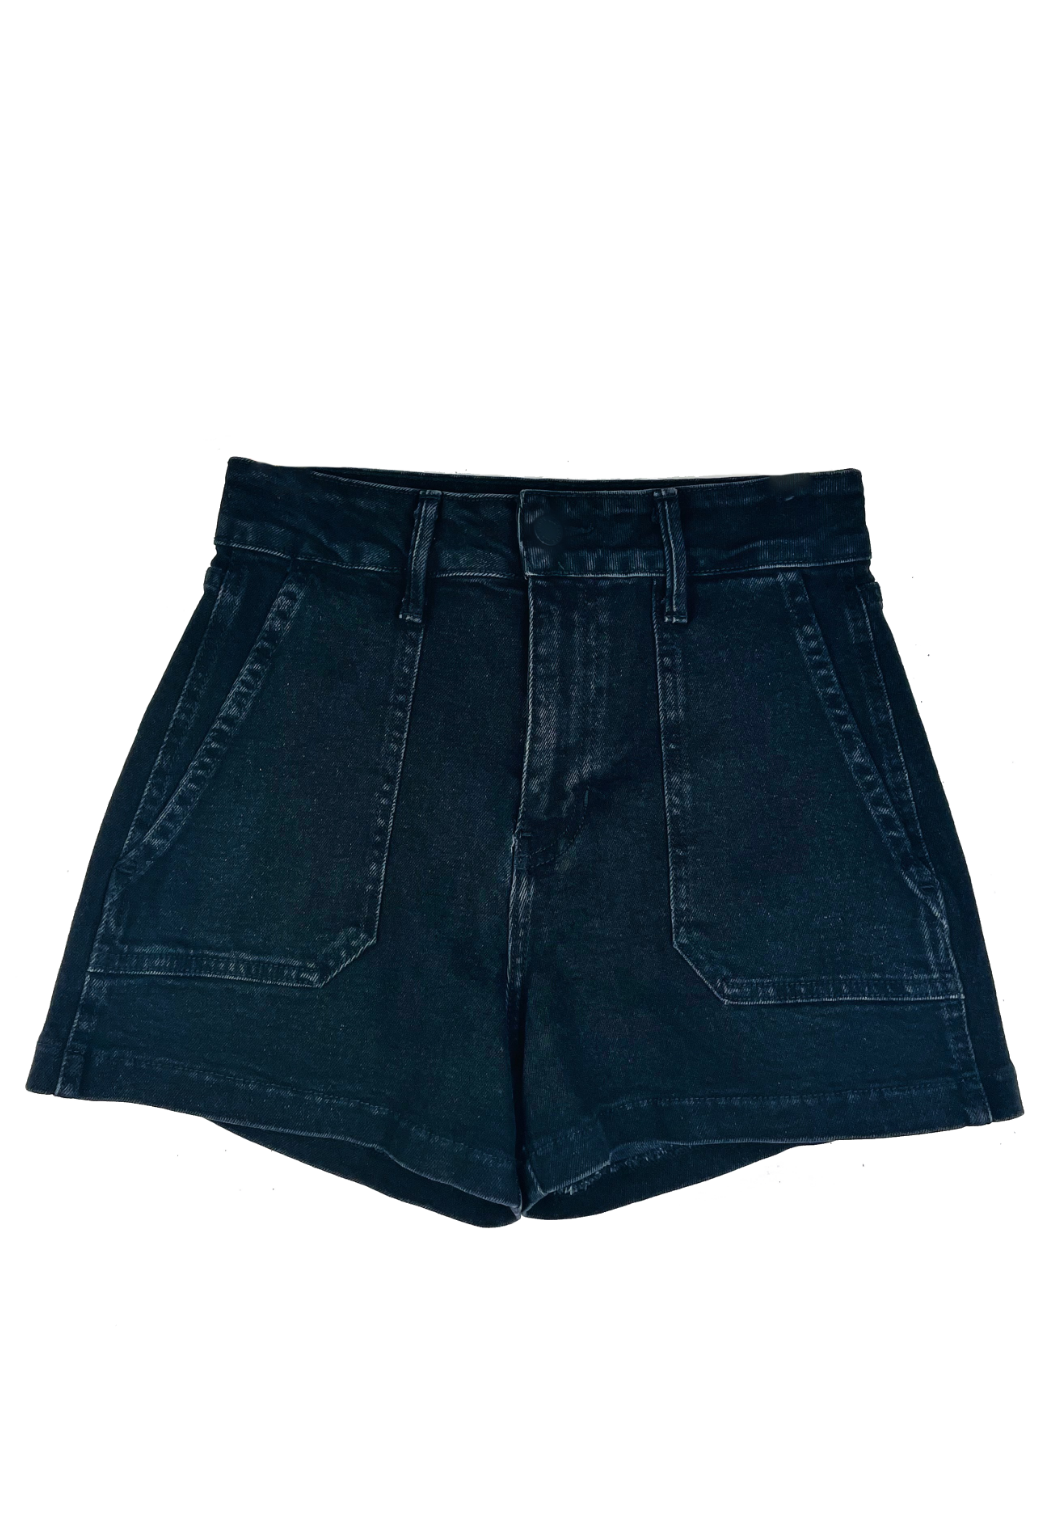 Sailor Denim Shorts - Black